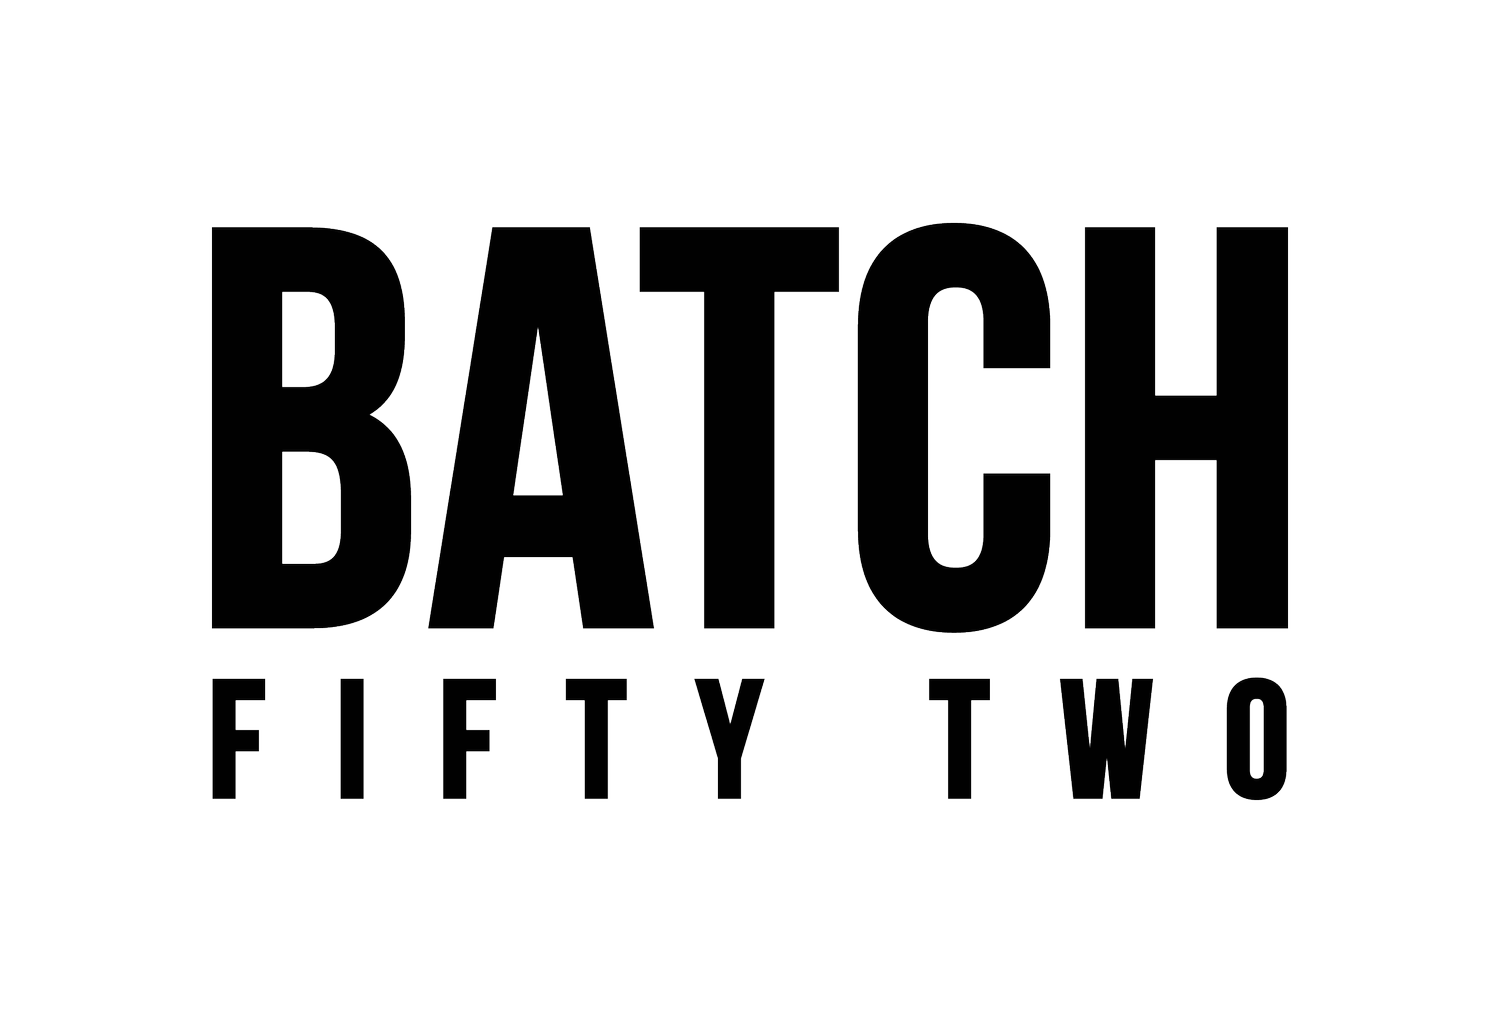 BatchFiftyTwo